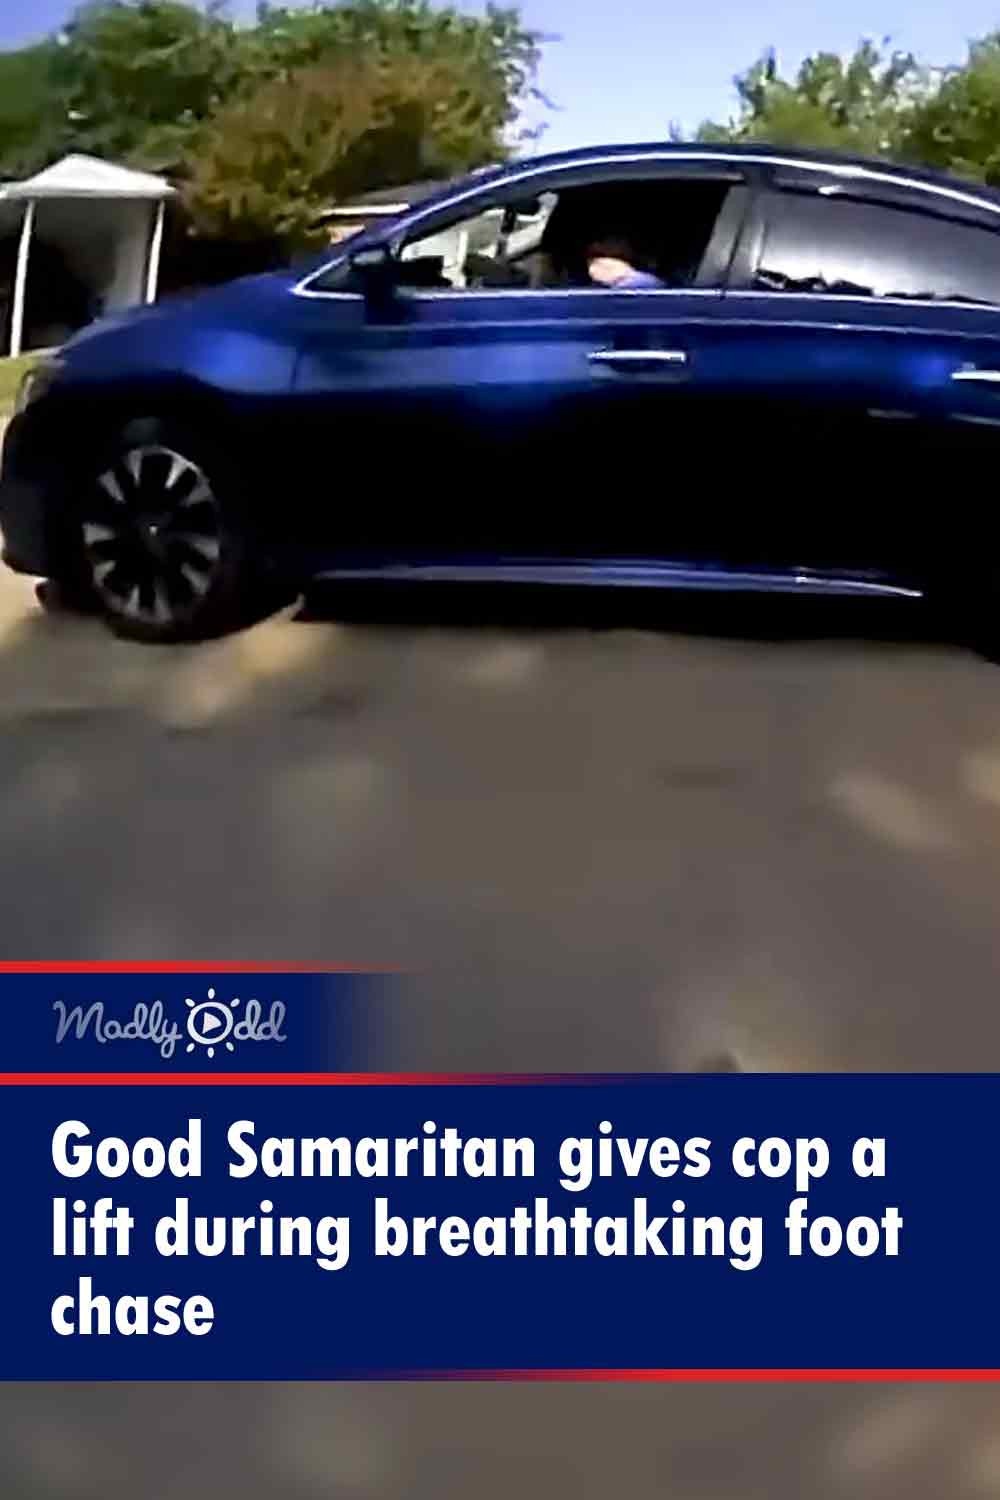 Good Samaritan gives cop a lift during breathtaking foot chase